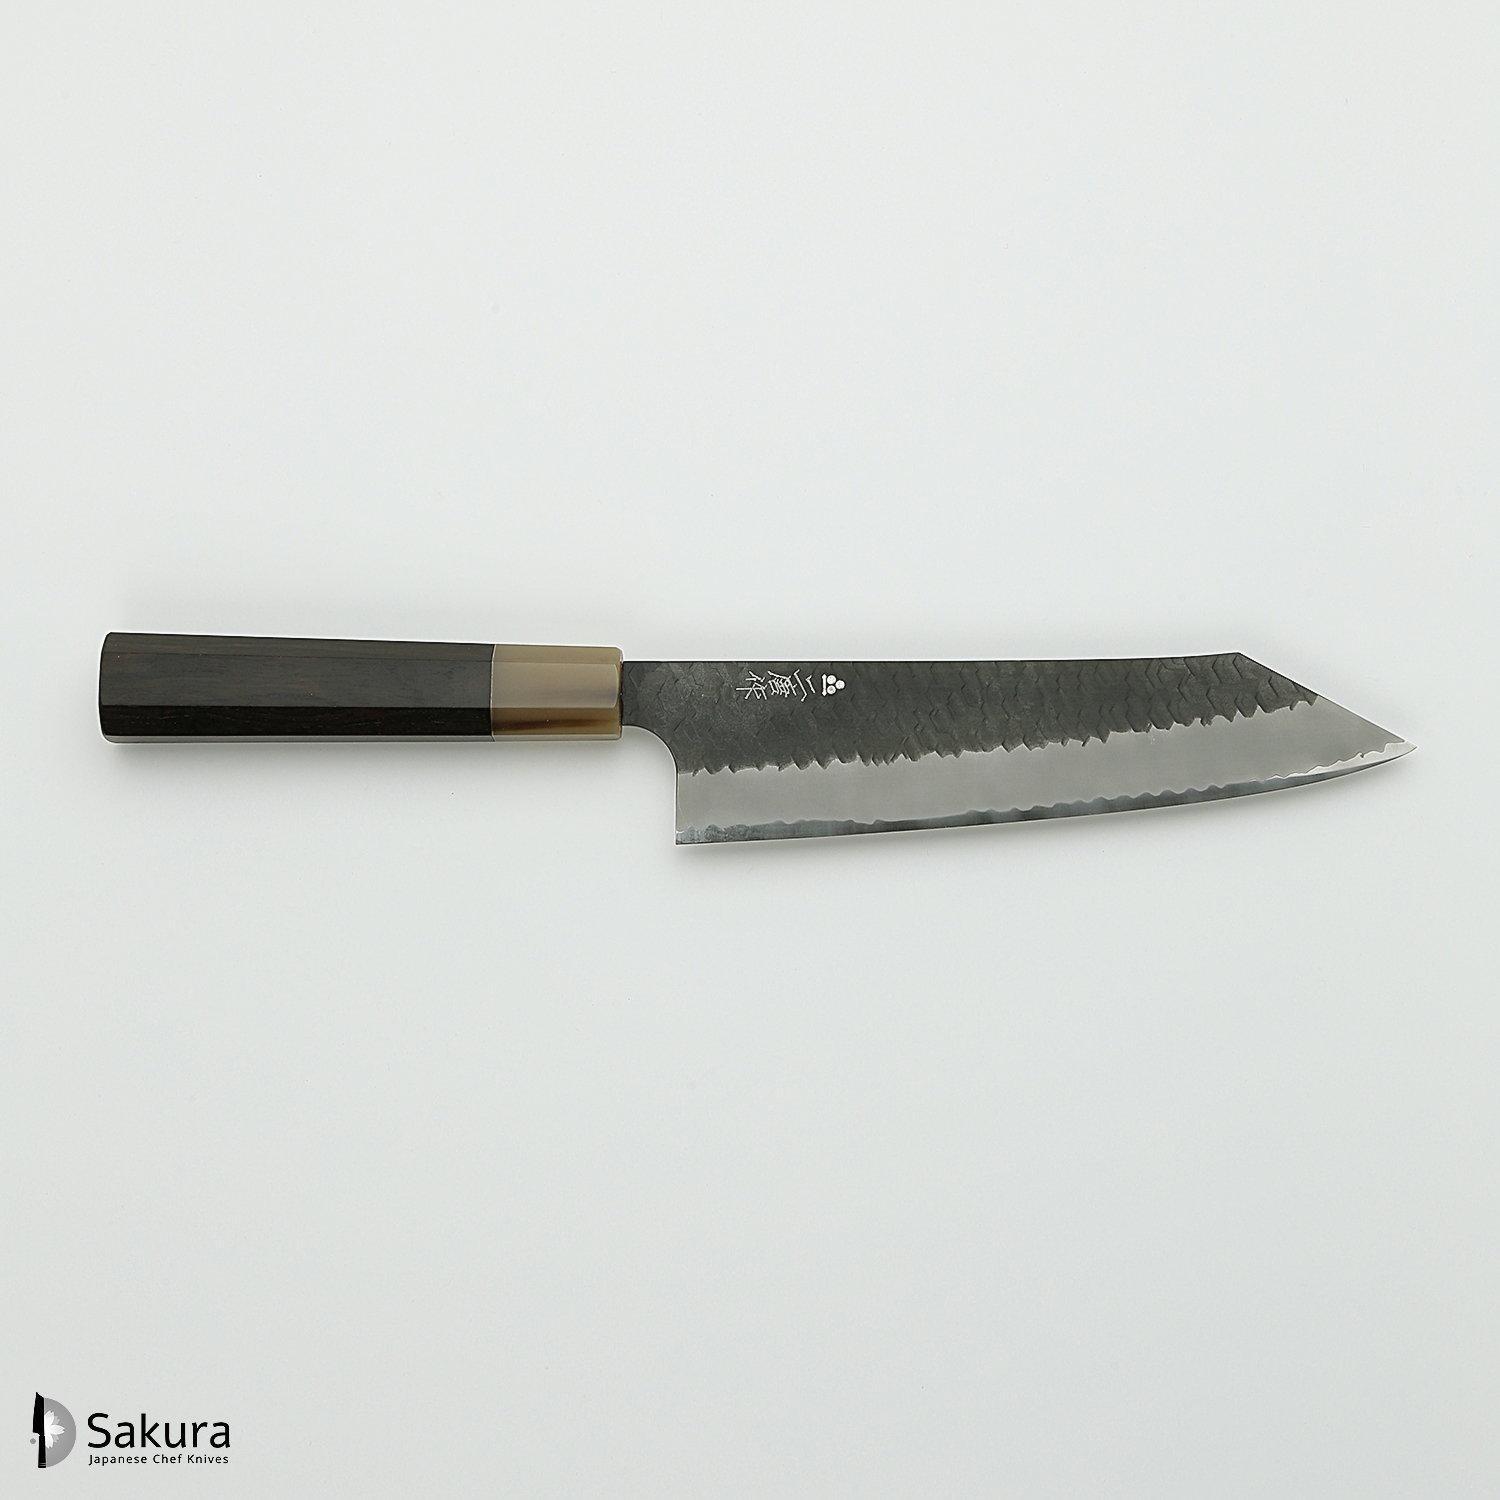 סכין שף רב-תכליתית קִּירִיצוּקֶה גִּיוּטוֹ 210מ״מ מחושלת בעבודת יד 3 שכבות: פלדת פחמן יפנית מתקדמת מסוג R2/SG2 עטופה פלדת אל-חלד גימור קורואיצ׳י שחור עם ריקוע פטיש ניגארה יפן